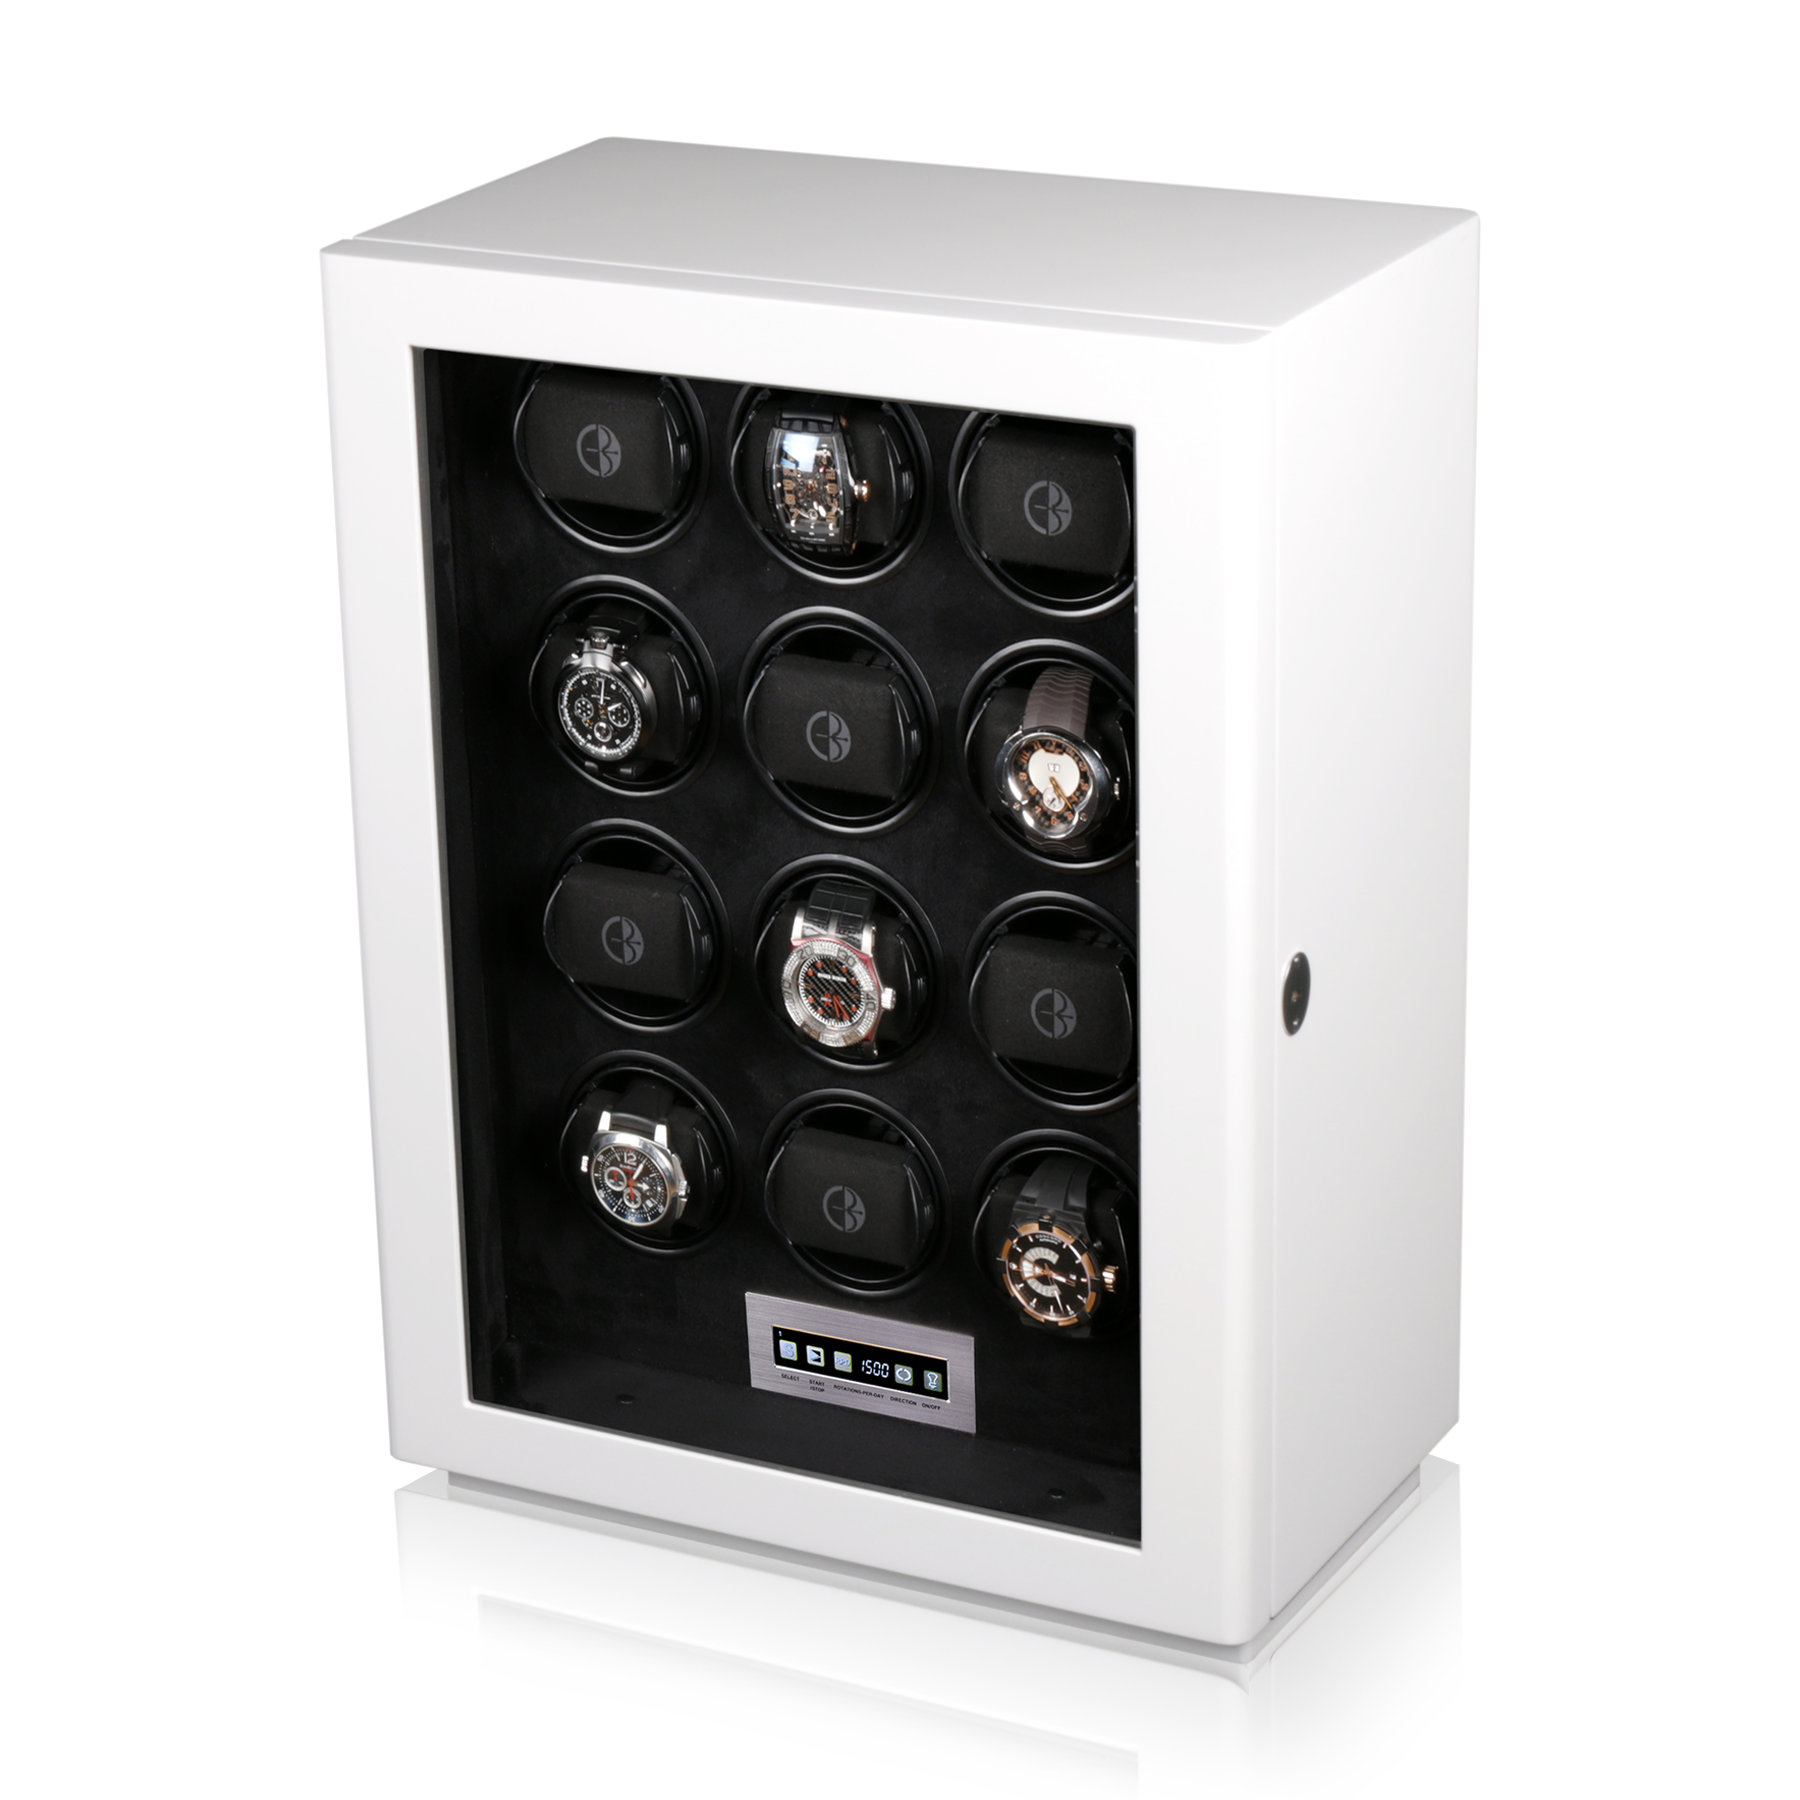 Тайммувер для хранения и завода 12-ти часов Boda Concept D12White